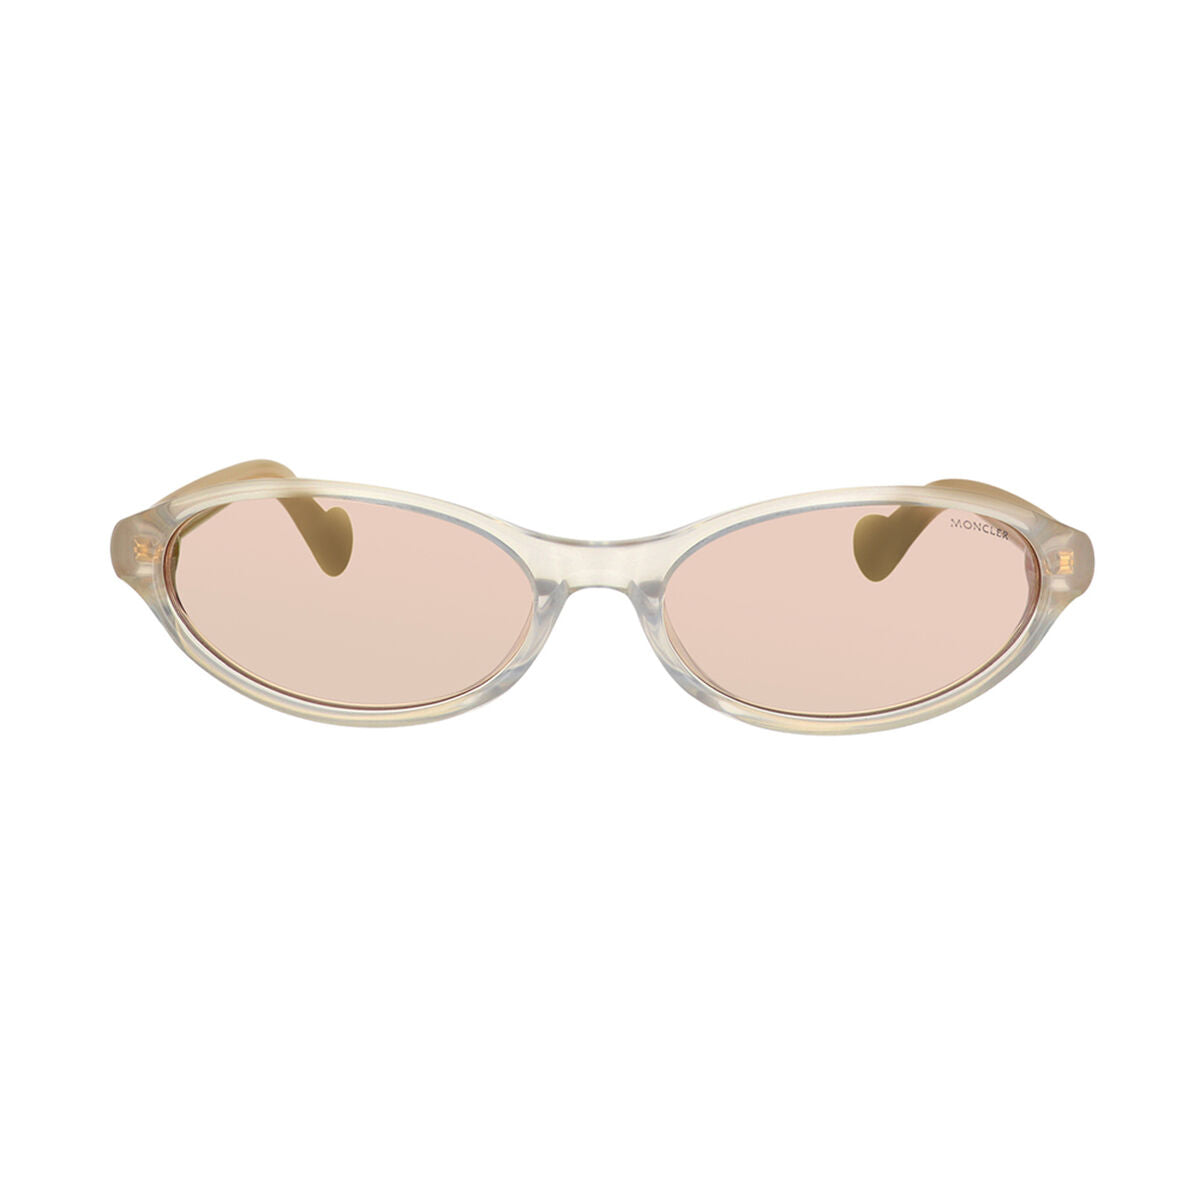 Kaufe Damensonnenbrille Moncler ML0117-25G-58 bei AWK Flagship um € 126.00